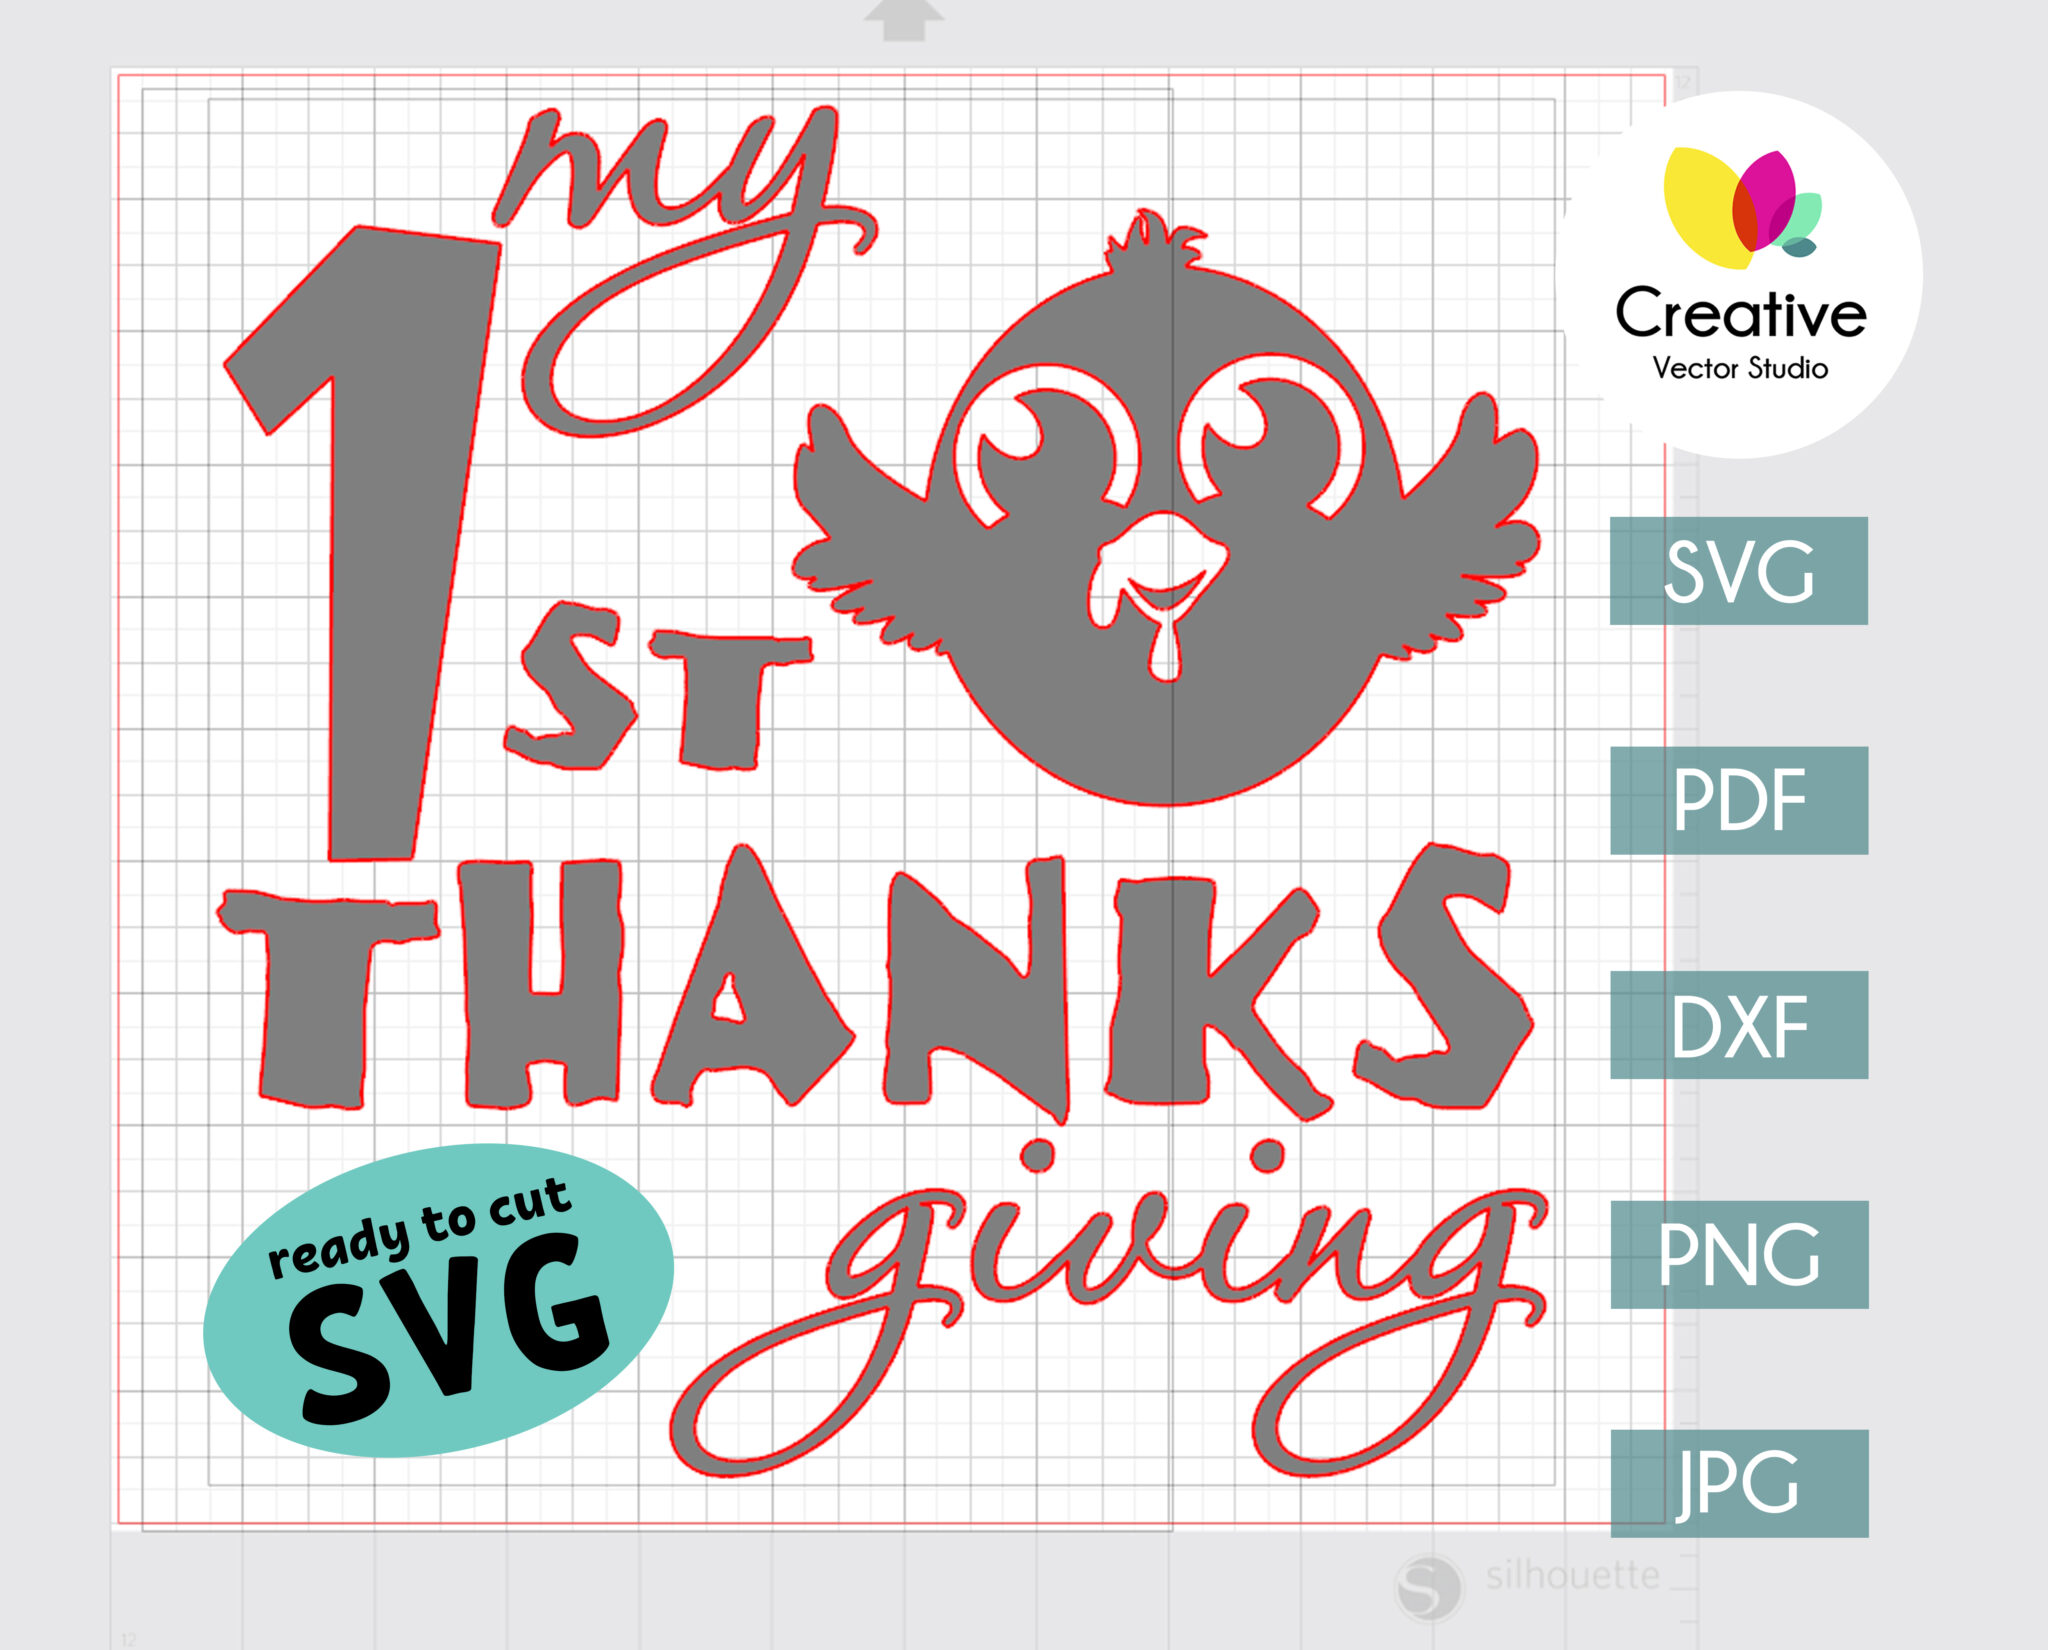 1st Thanksgiving SVG Baby Onesie Design - Creative Vector Studio